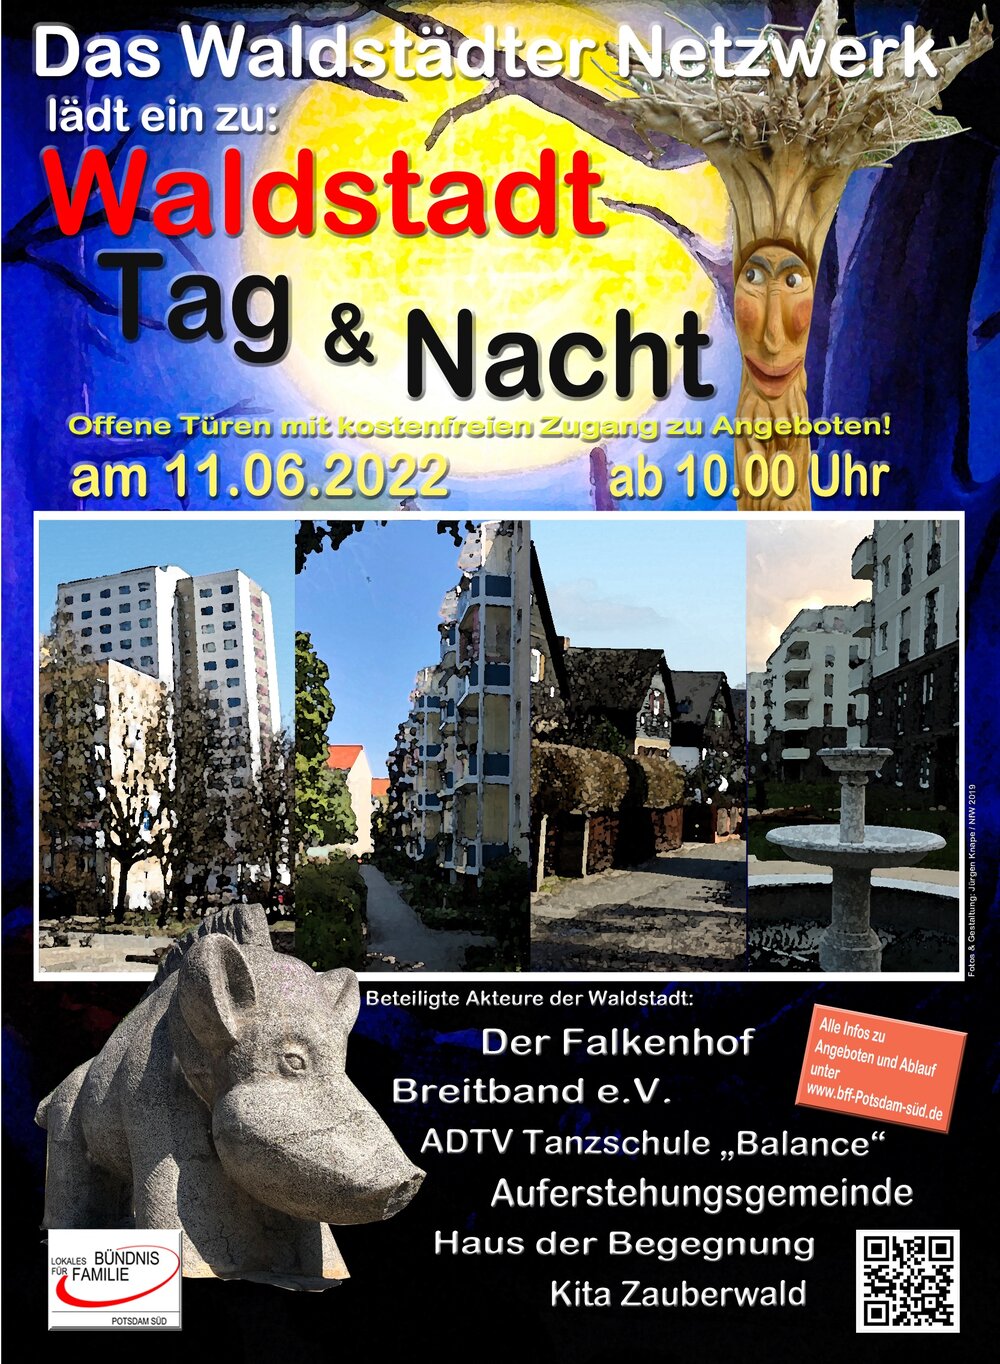 Poster mit zwei Ansichten der Waldstadt, Kunst vom Abenteurspielplatz und den Namen der beteiligten Akteure